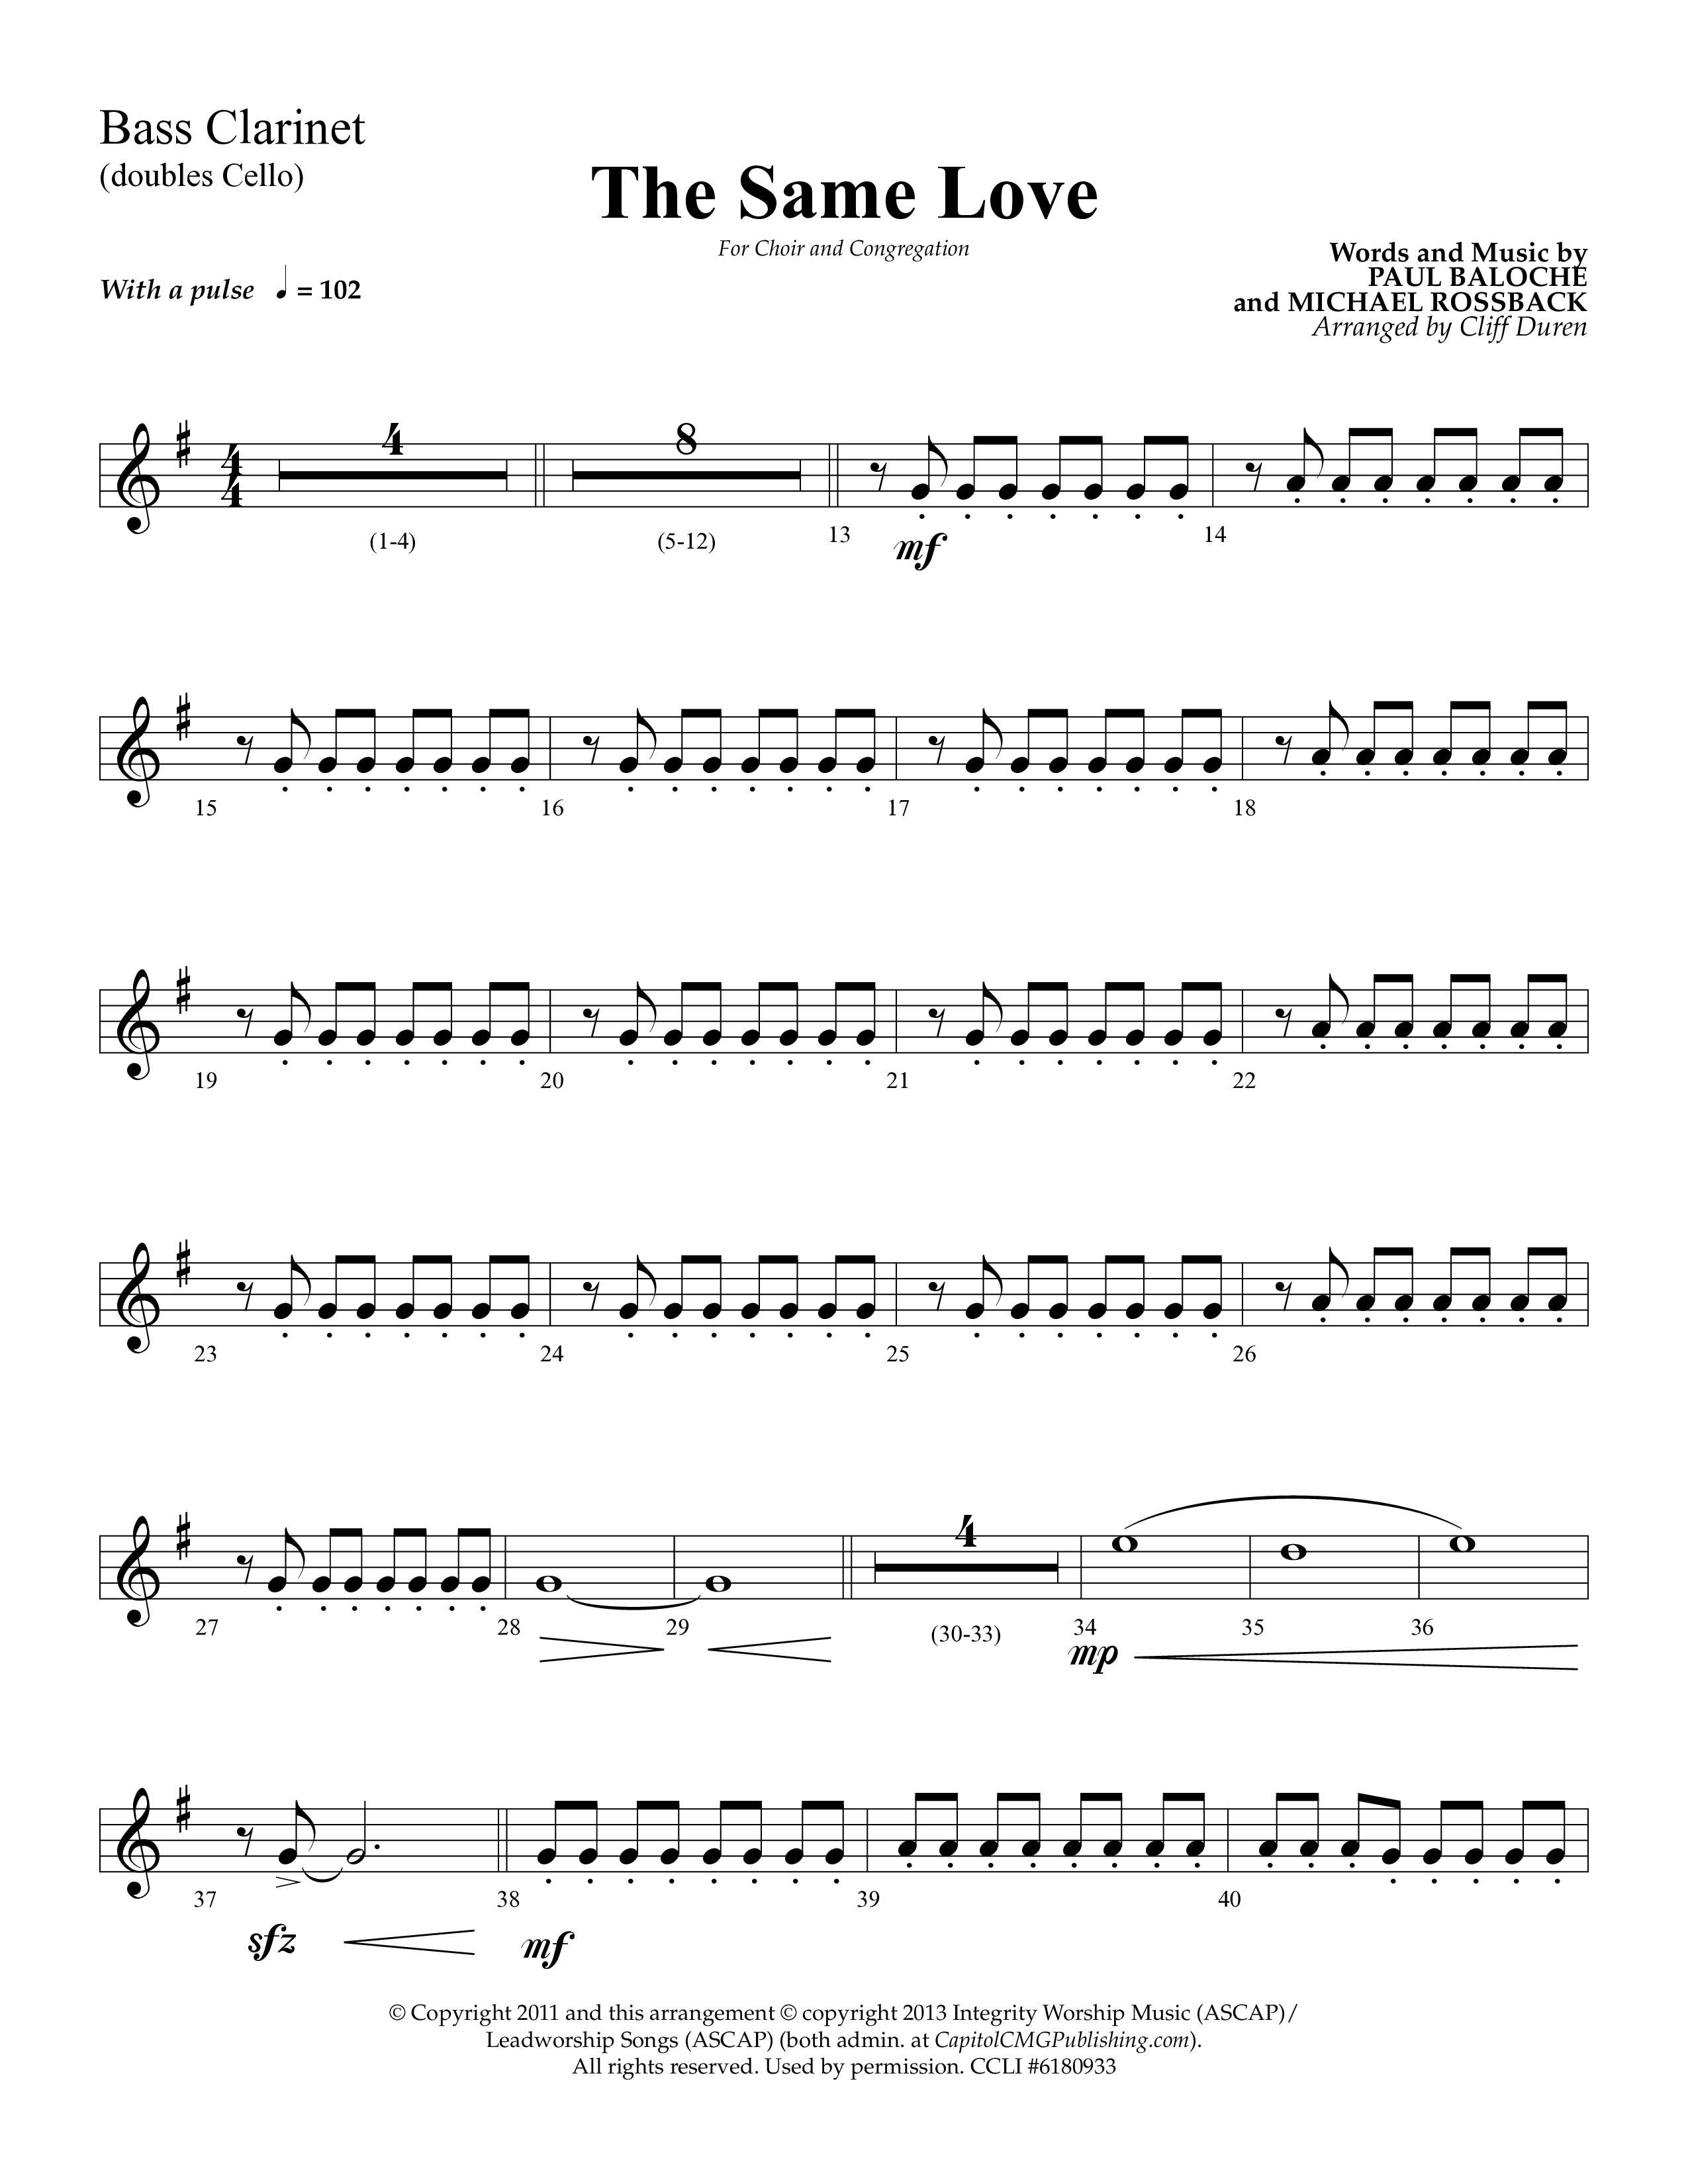 The Same Love (Choral Anthem SATB) Bass Clarinet (Lifeway Choral / Arr. Cliff Duren)